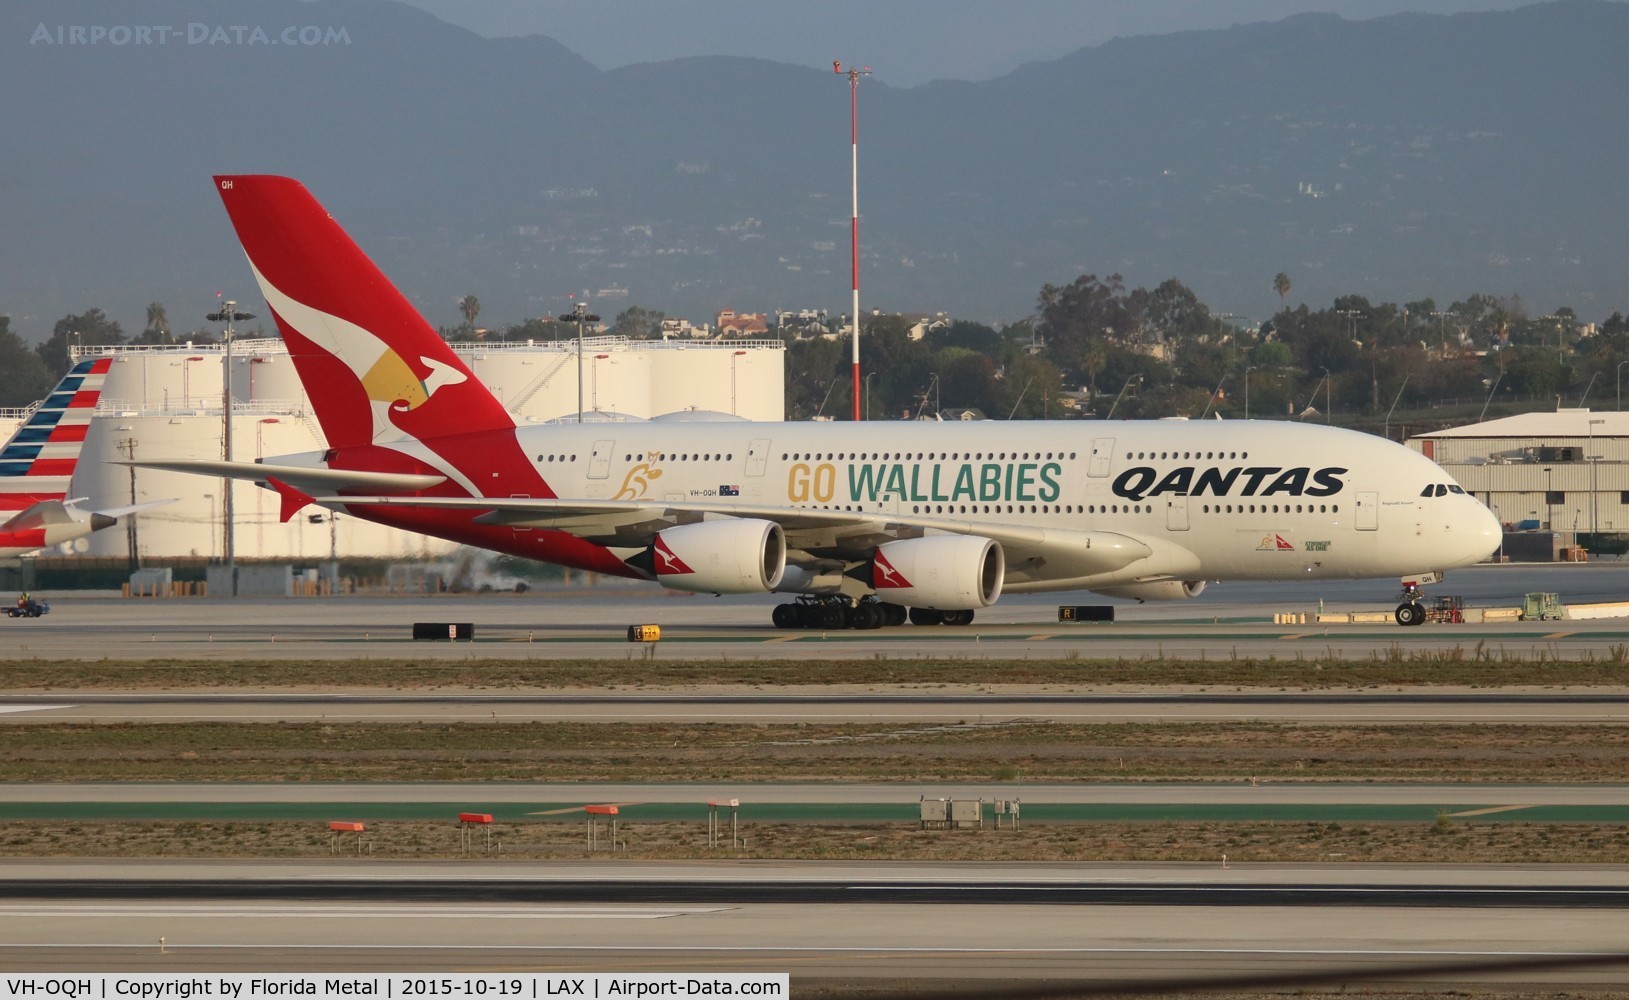 VH-OQH, 2009 Airbus A380-842 C/N 050, Qantas